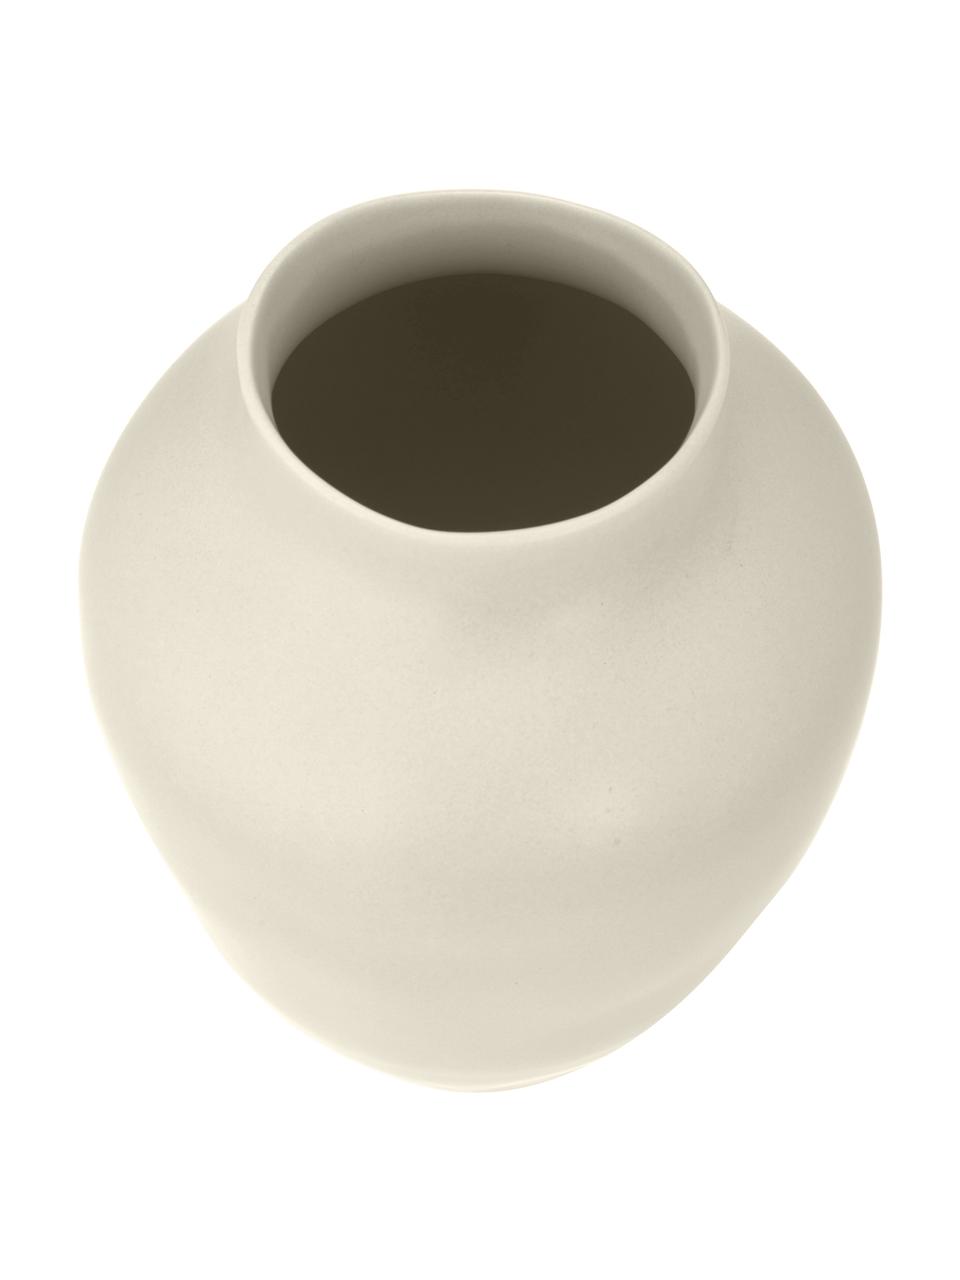 Vase crème en grès fait main Latona, Grès cérame, Blanc crème, Ø 27 x haut. 41 cm